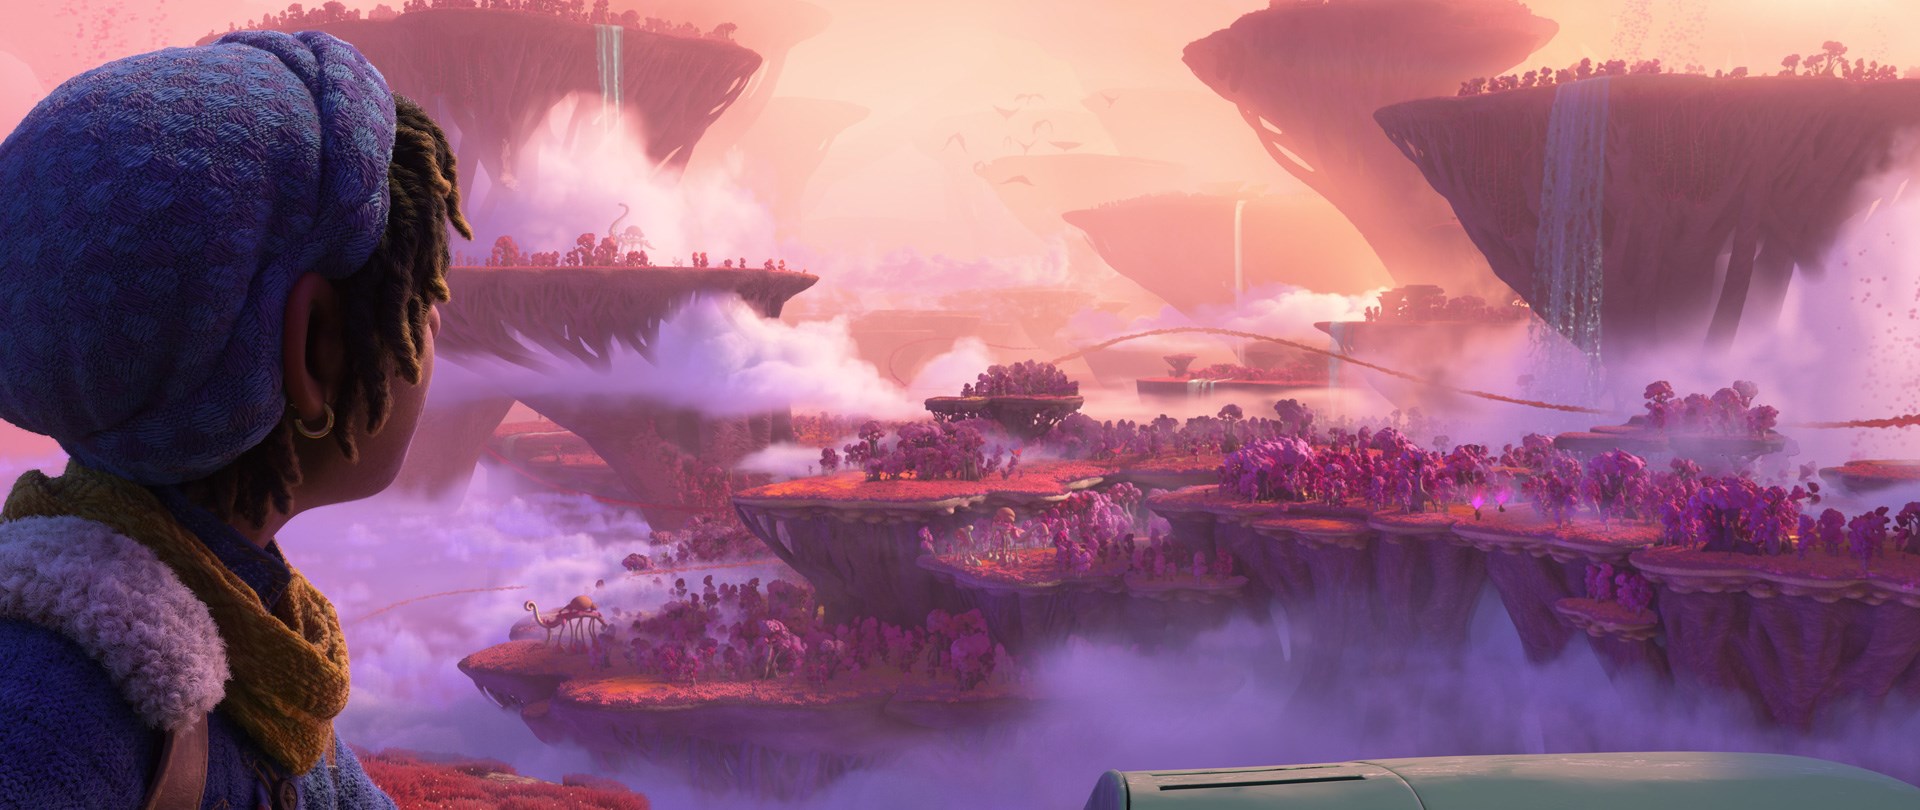 Scen från filmen En annorlunda värld med Ethan Clade i förgrunden och ett närmast utomjordiskt landskap i rosa med svamp- och korallliknande växtlighet i bakgrunden som panorama.